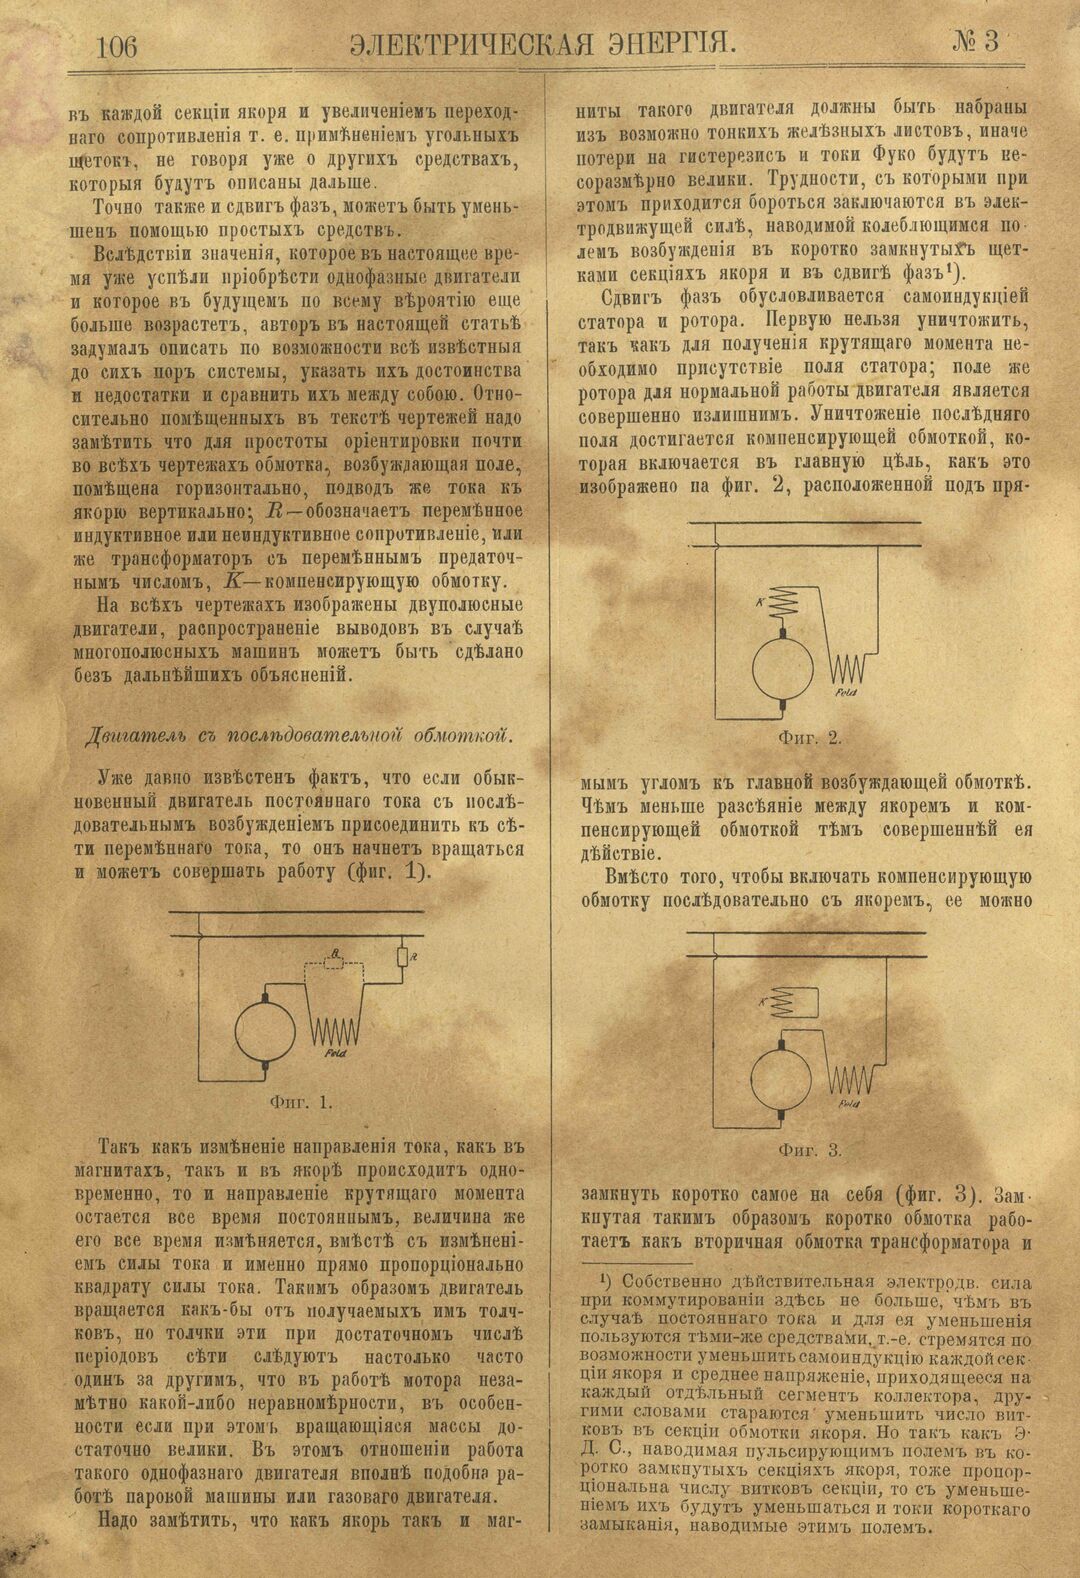 Рис. 1. Журнал Электрическая Энергiя, 3 номер, март, 1904 года, страница 106